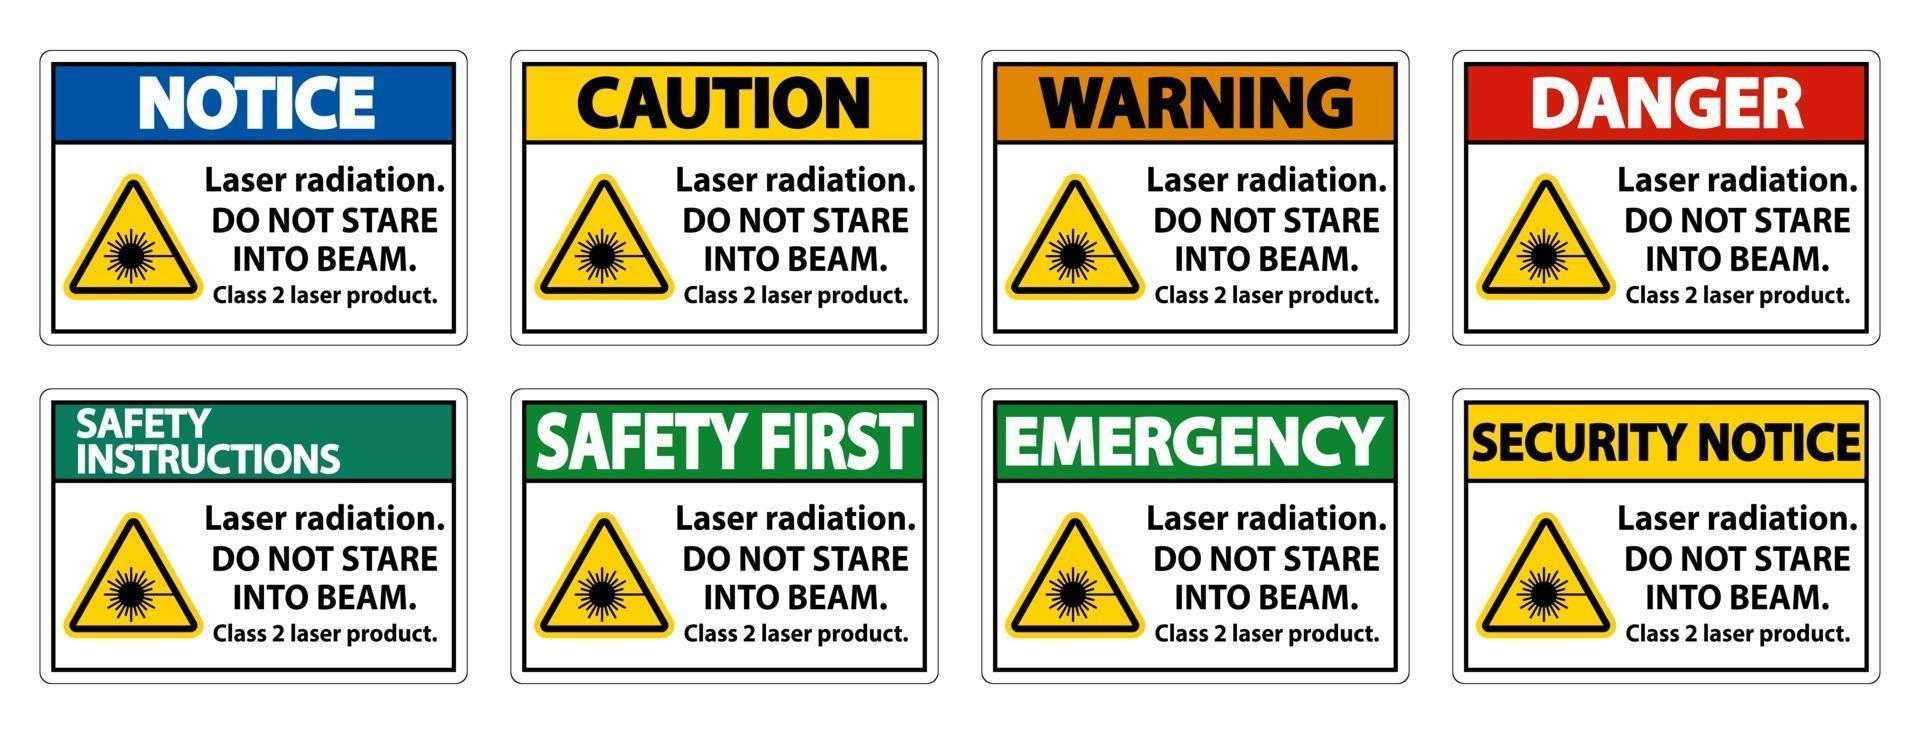 laserstraling, niet in de straal staren, klasse 2 laserproductteken op witte achtergrond vector